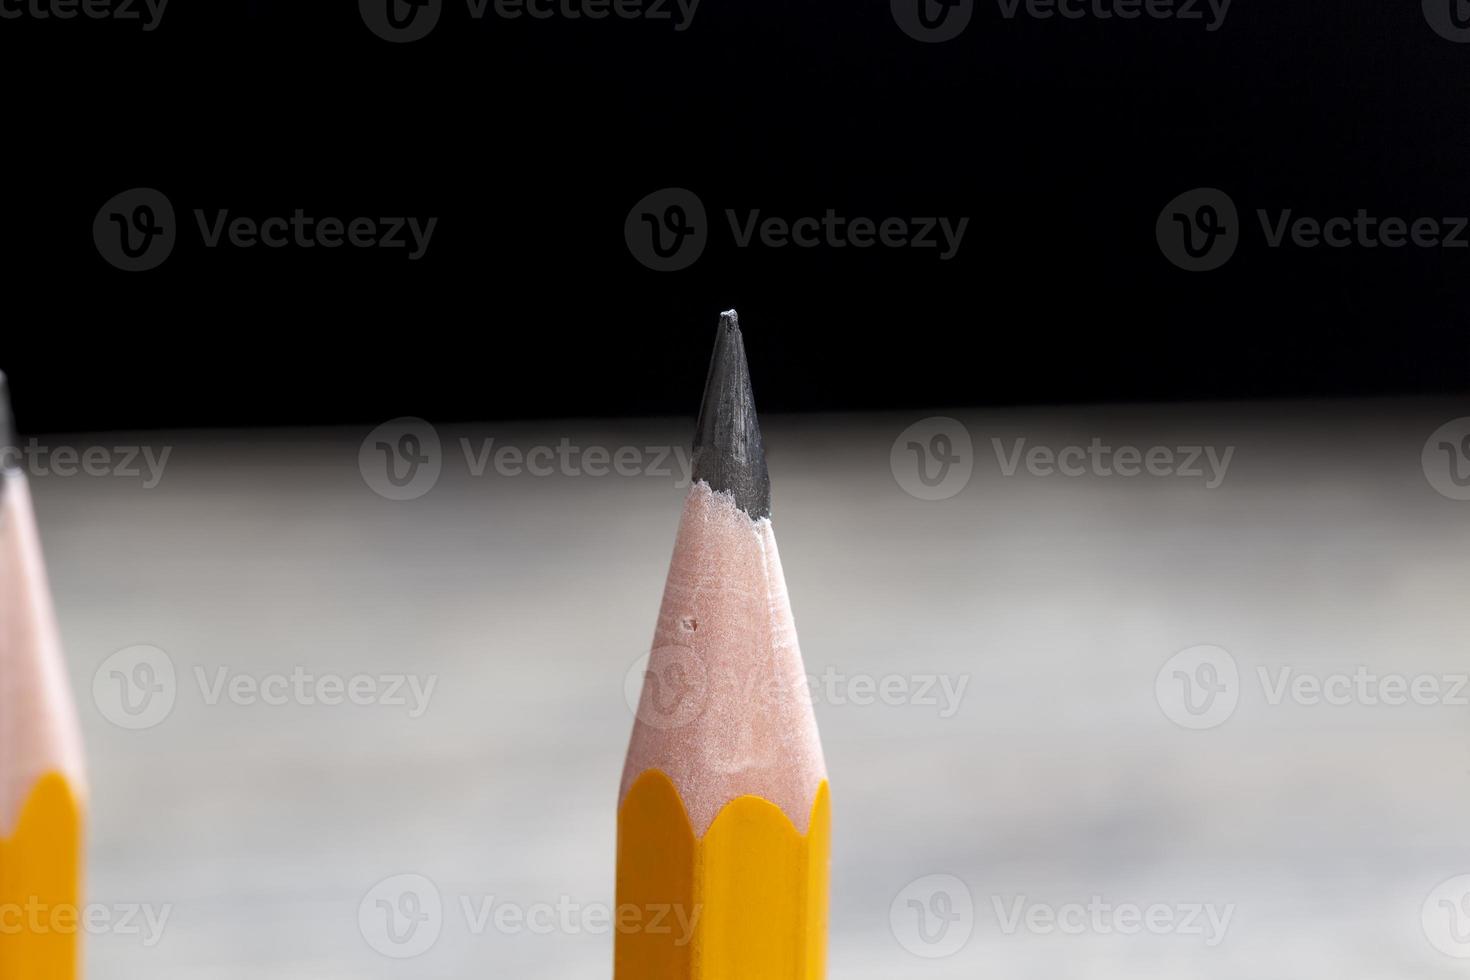 des crayons taillés pour dessiner des schémas ou des dessins photo